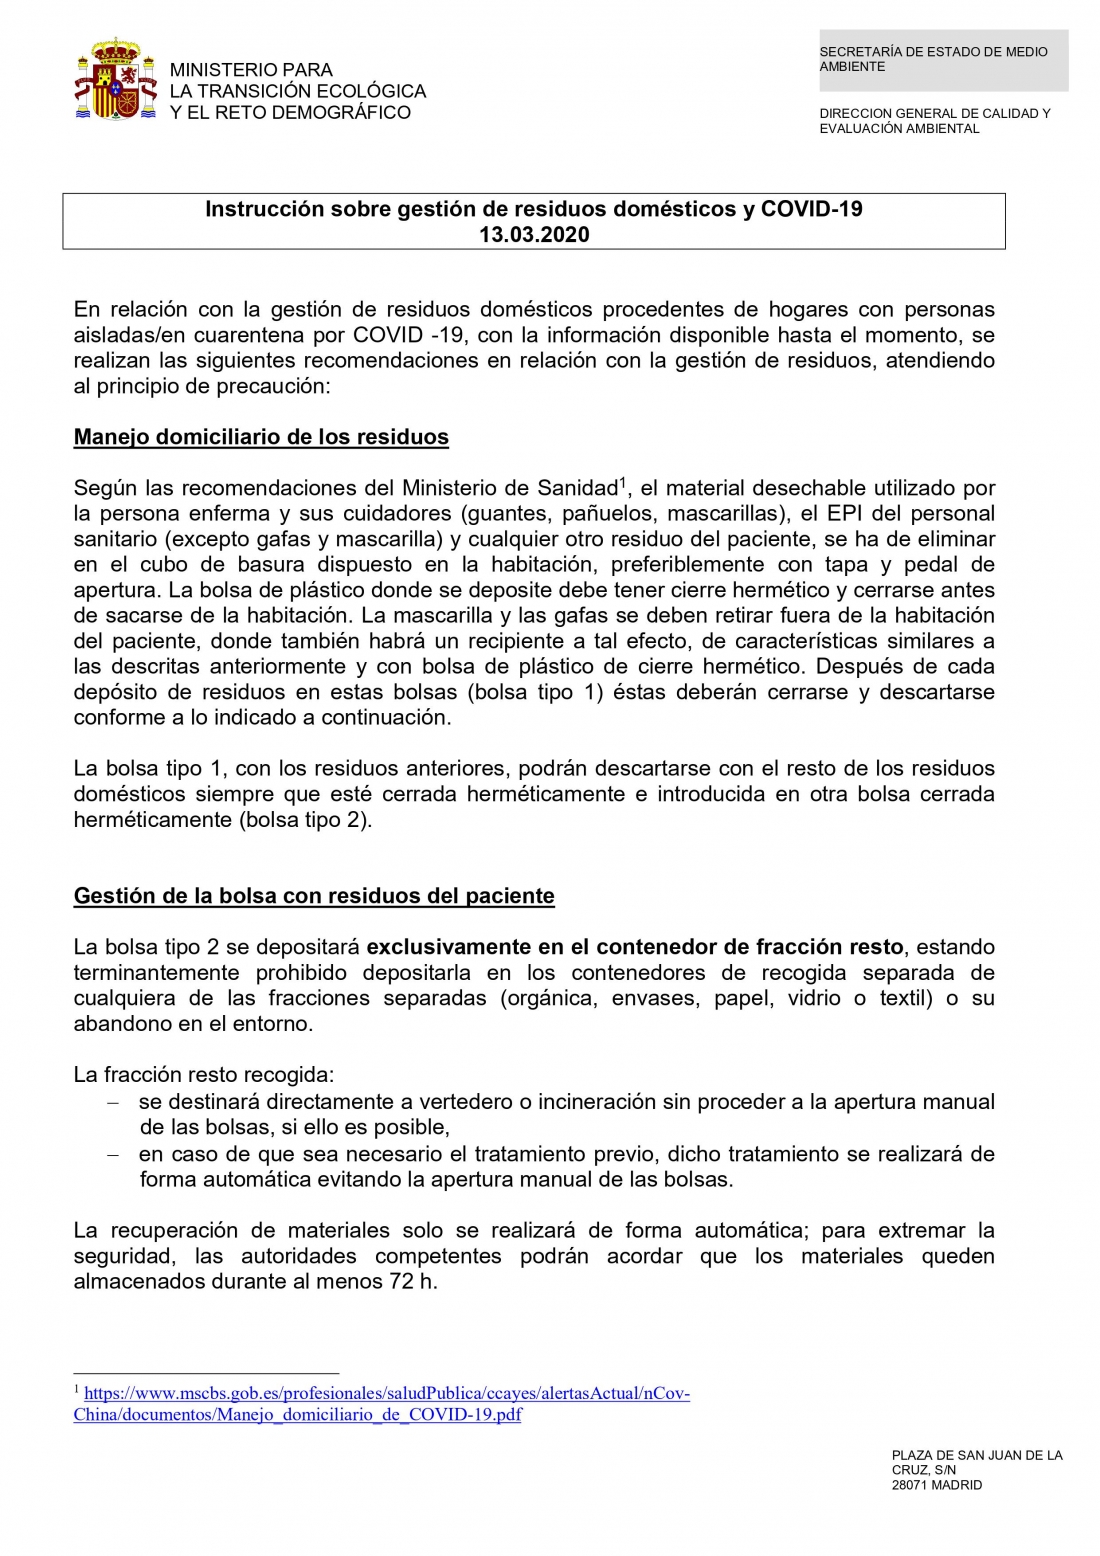 INSTRUCCIONES SOBRE GESTIÓN DE RESIDUOS DOMÉSTICOS COVID-19